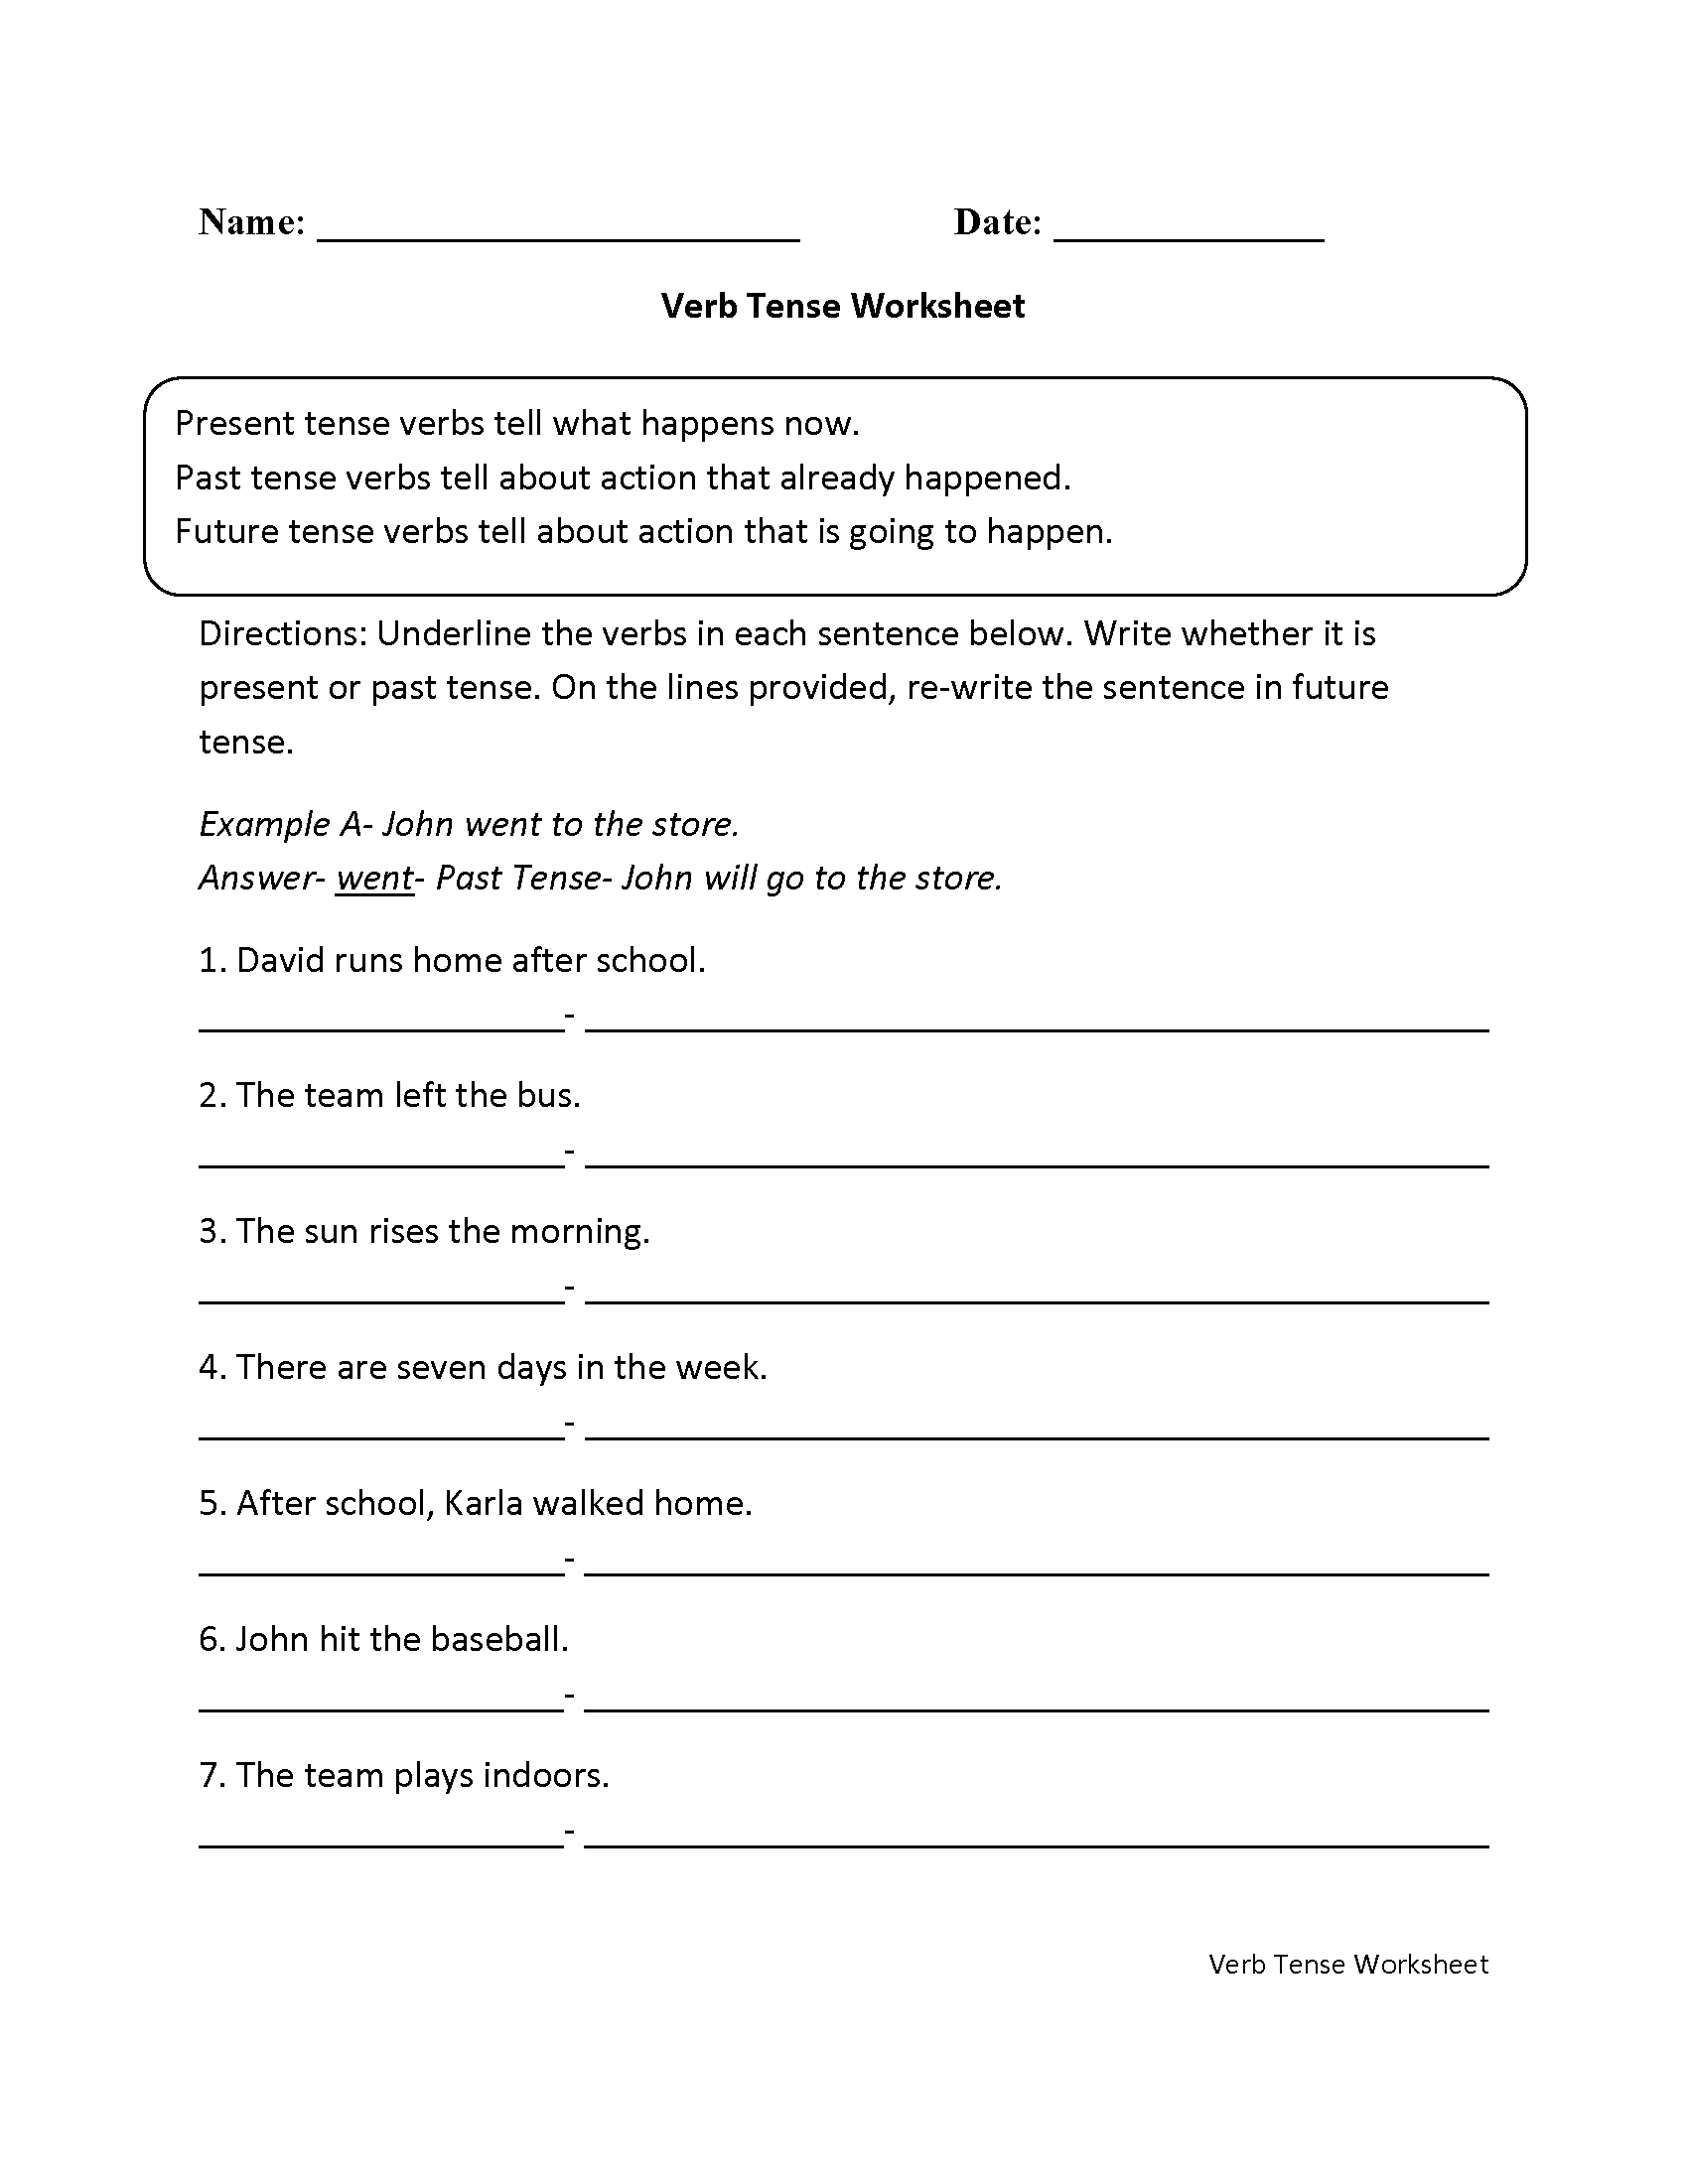 Verb Tense Worksheet